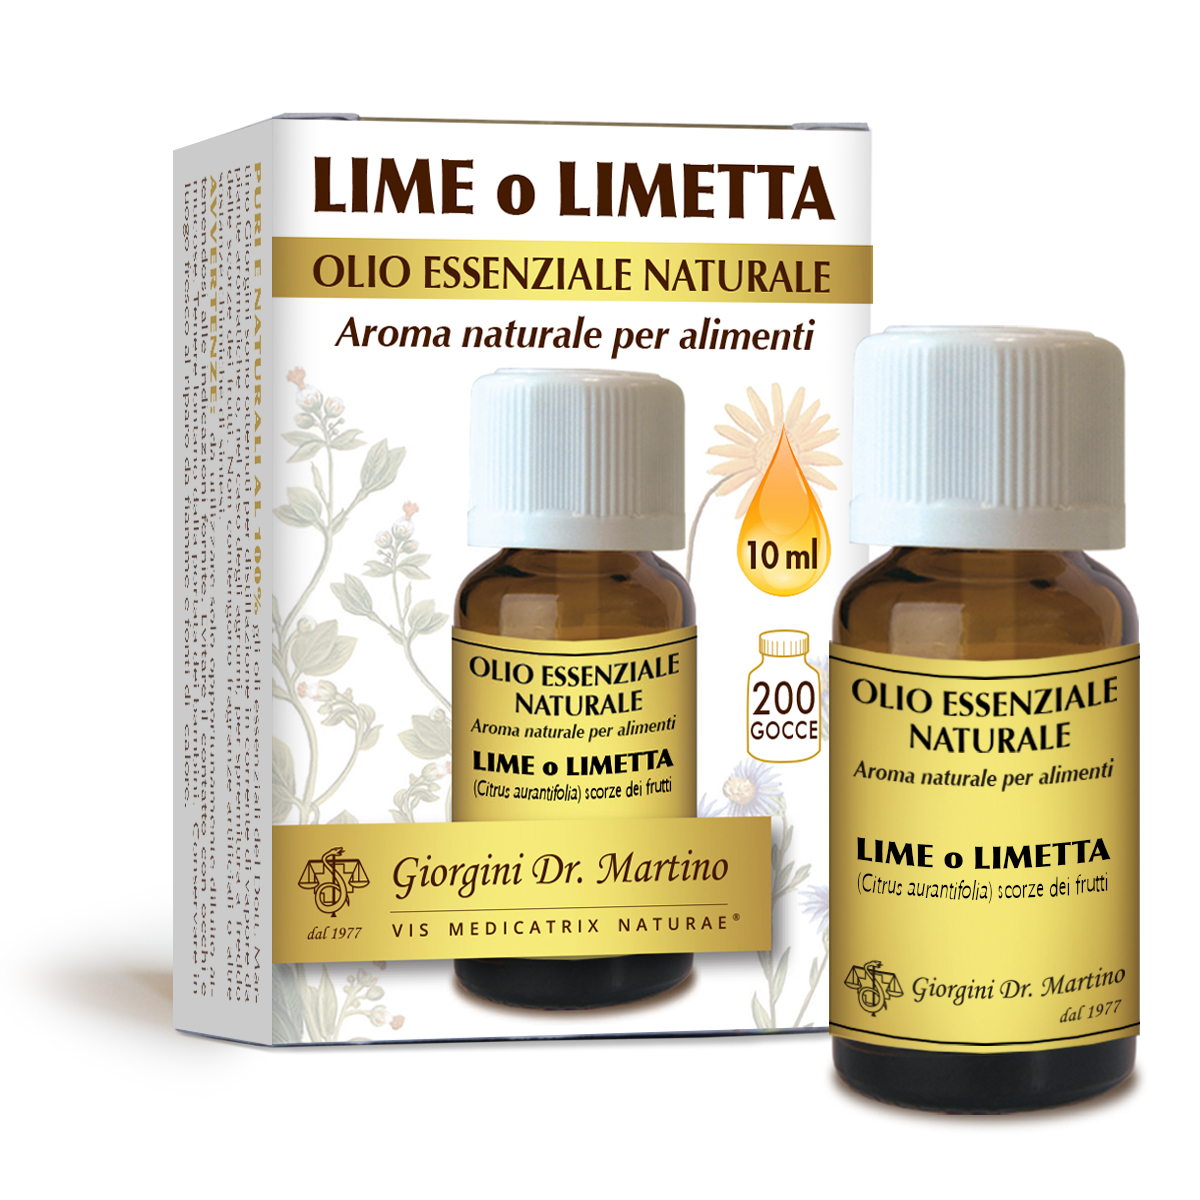 Lime o Limetta olio essenzialenaturale 10 ml